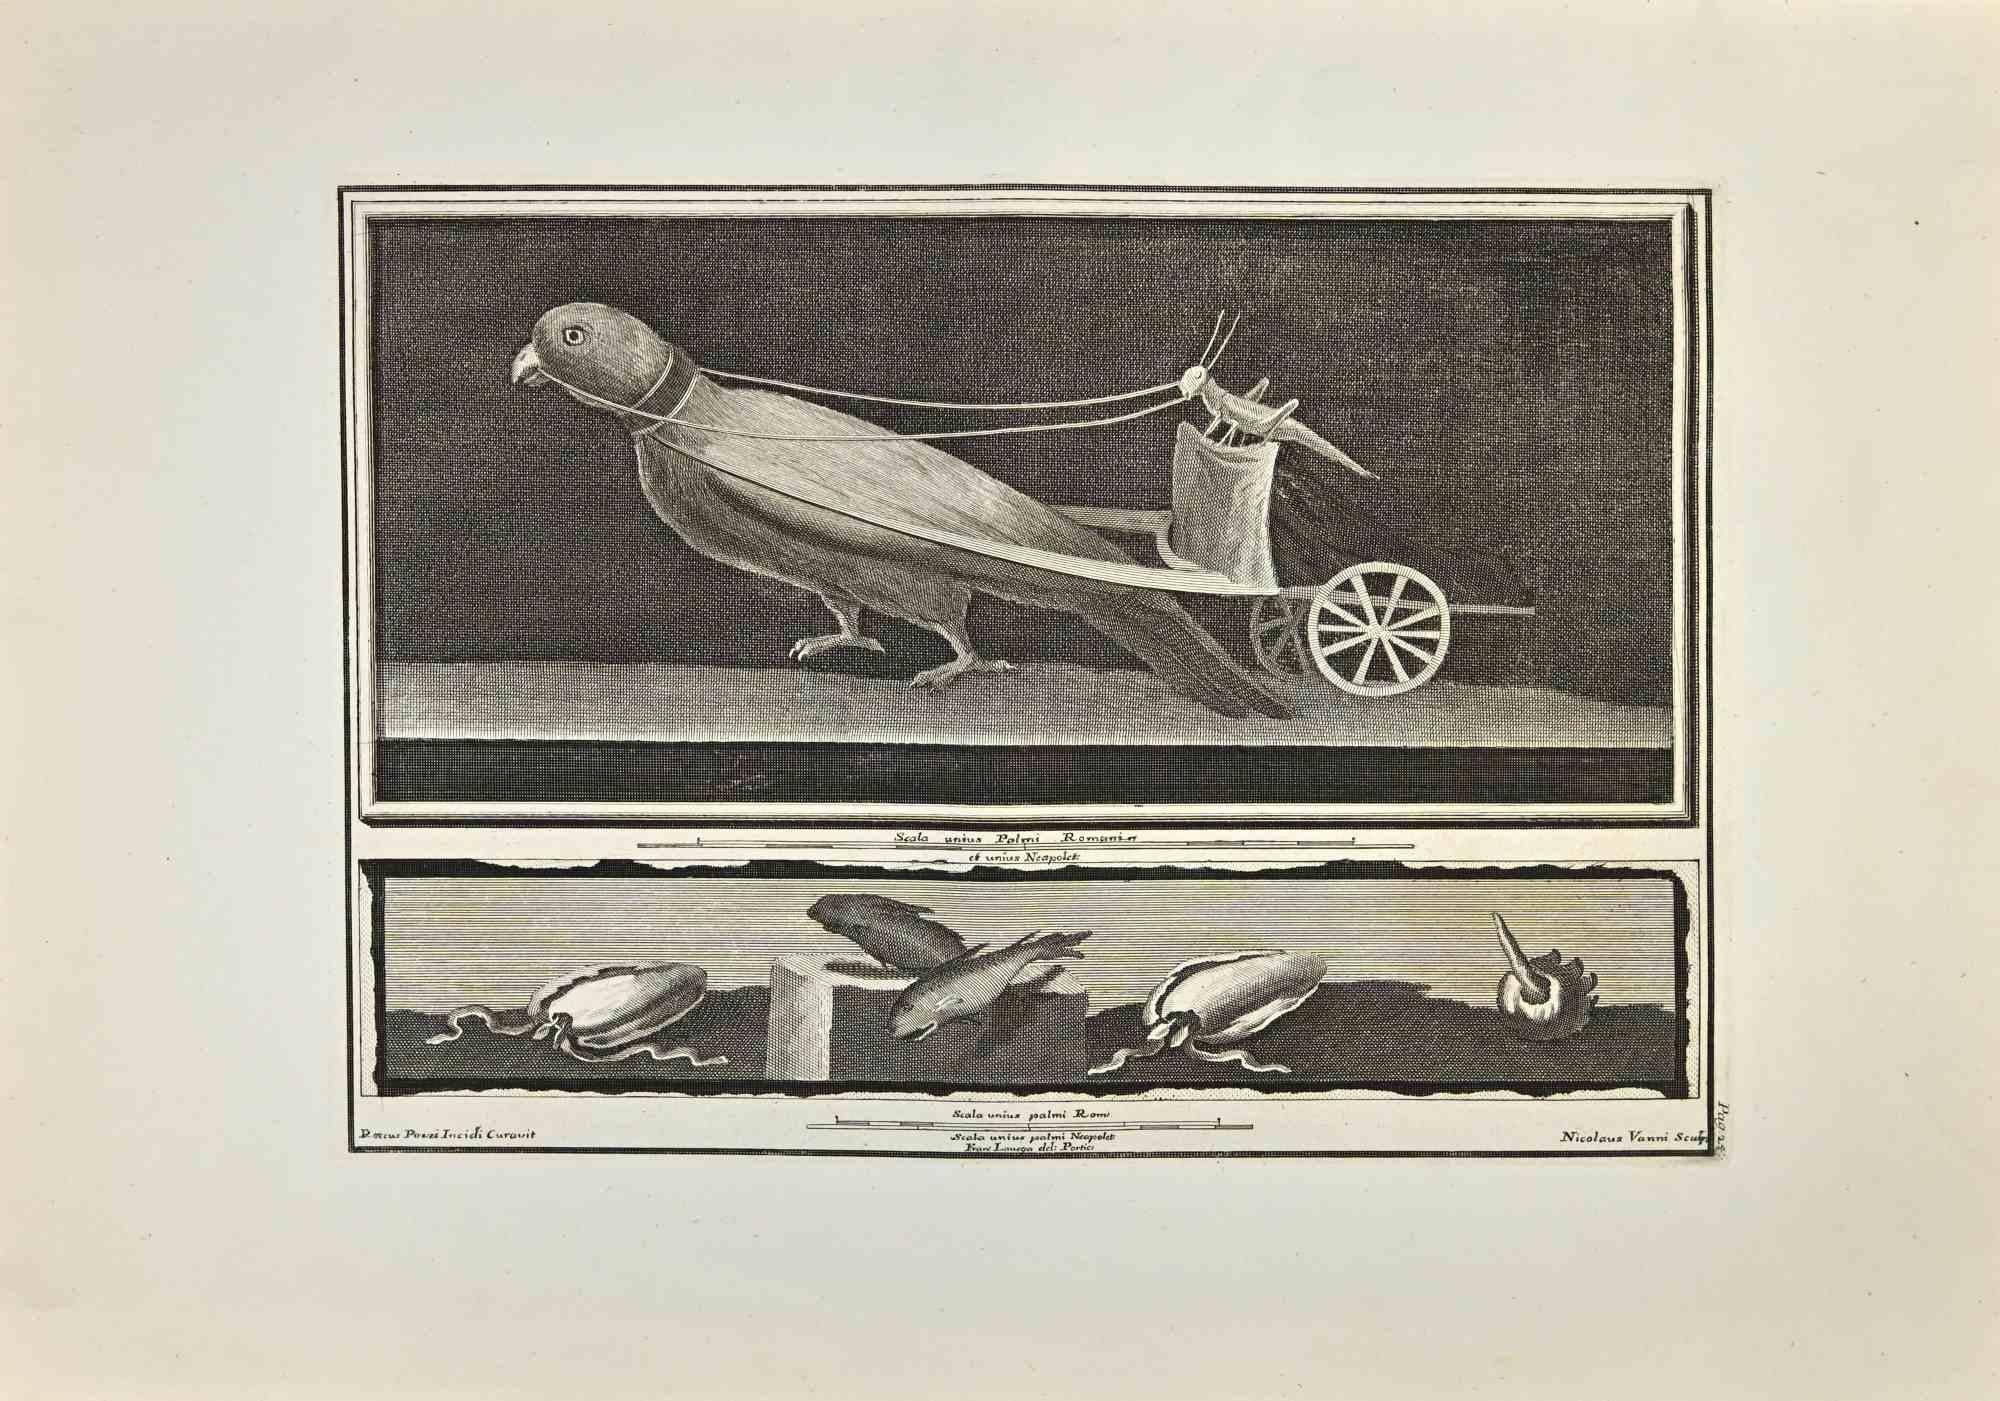 Der Grashüpfer am Steuer eines Papageienwagens aus den "Altertümern von Herculaneum" ist eine Radierung auf Papier von Nicola Vanni nach Roccus Pozzi aus dem 18. Jahrhundert.

Signiert auf der Platte.

Guter Zustand mit einigen Faltungen.

Die